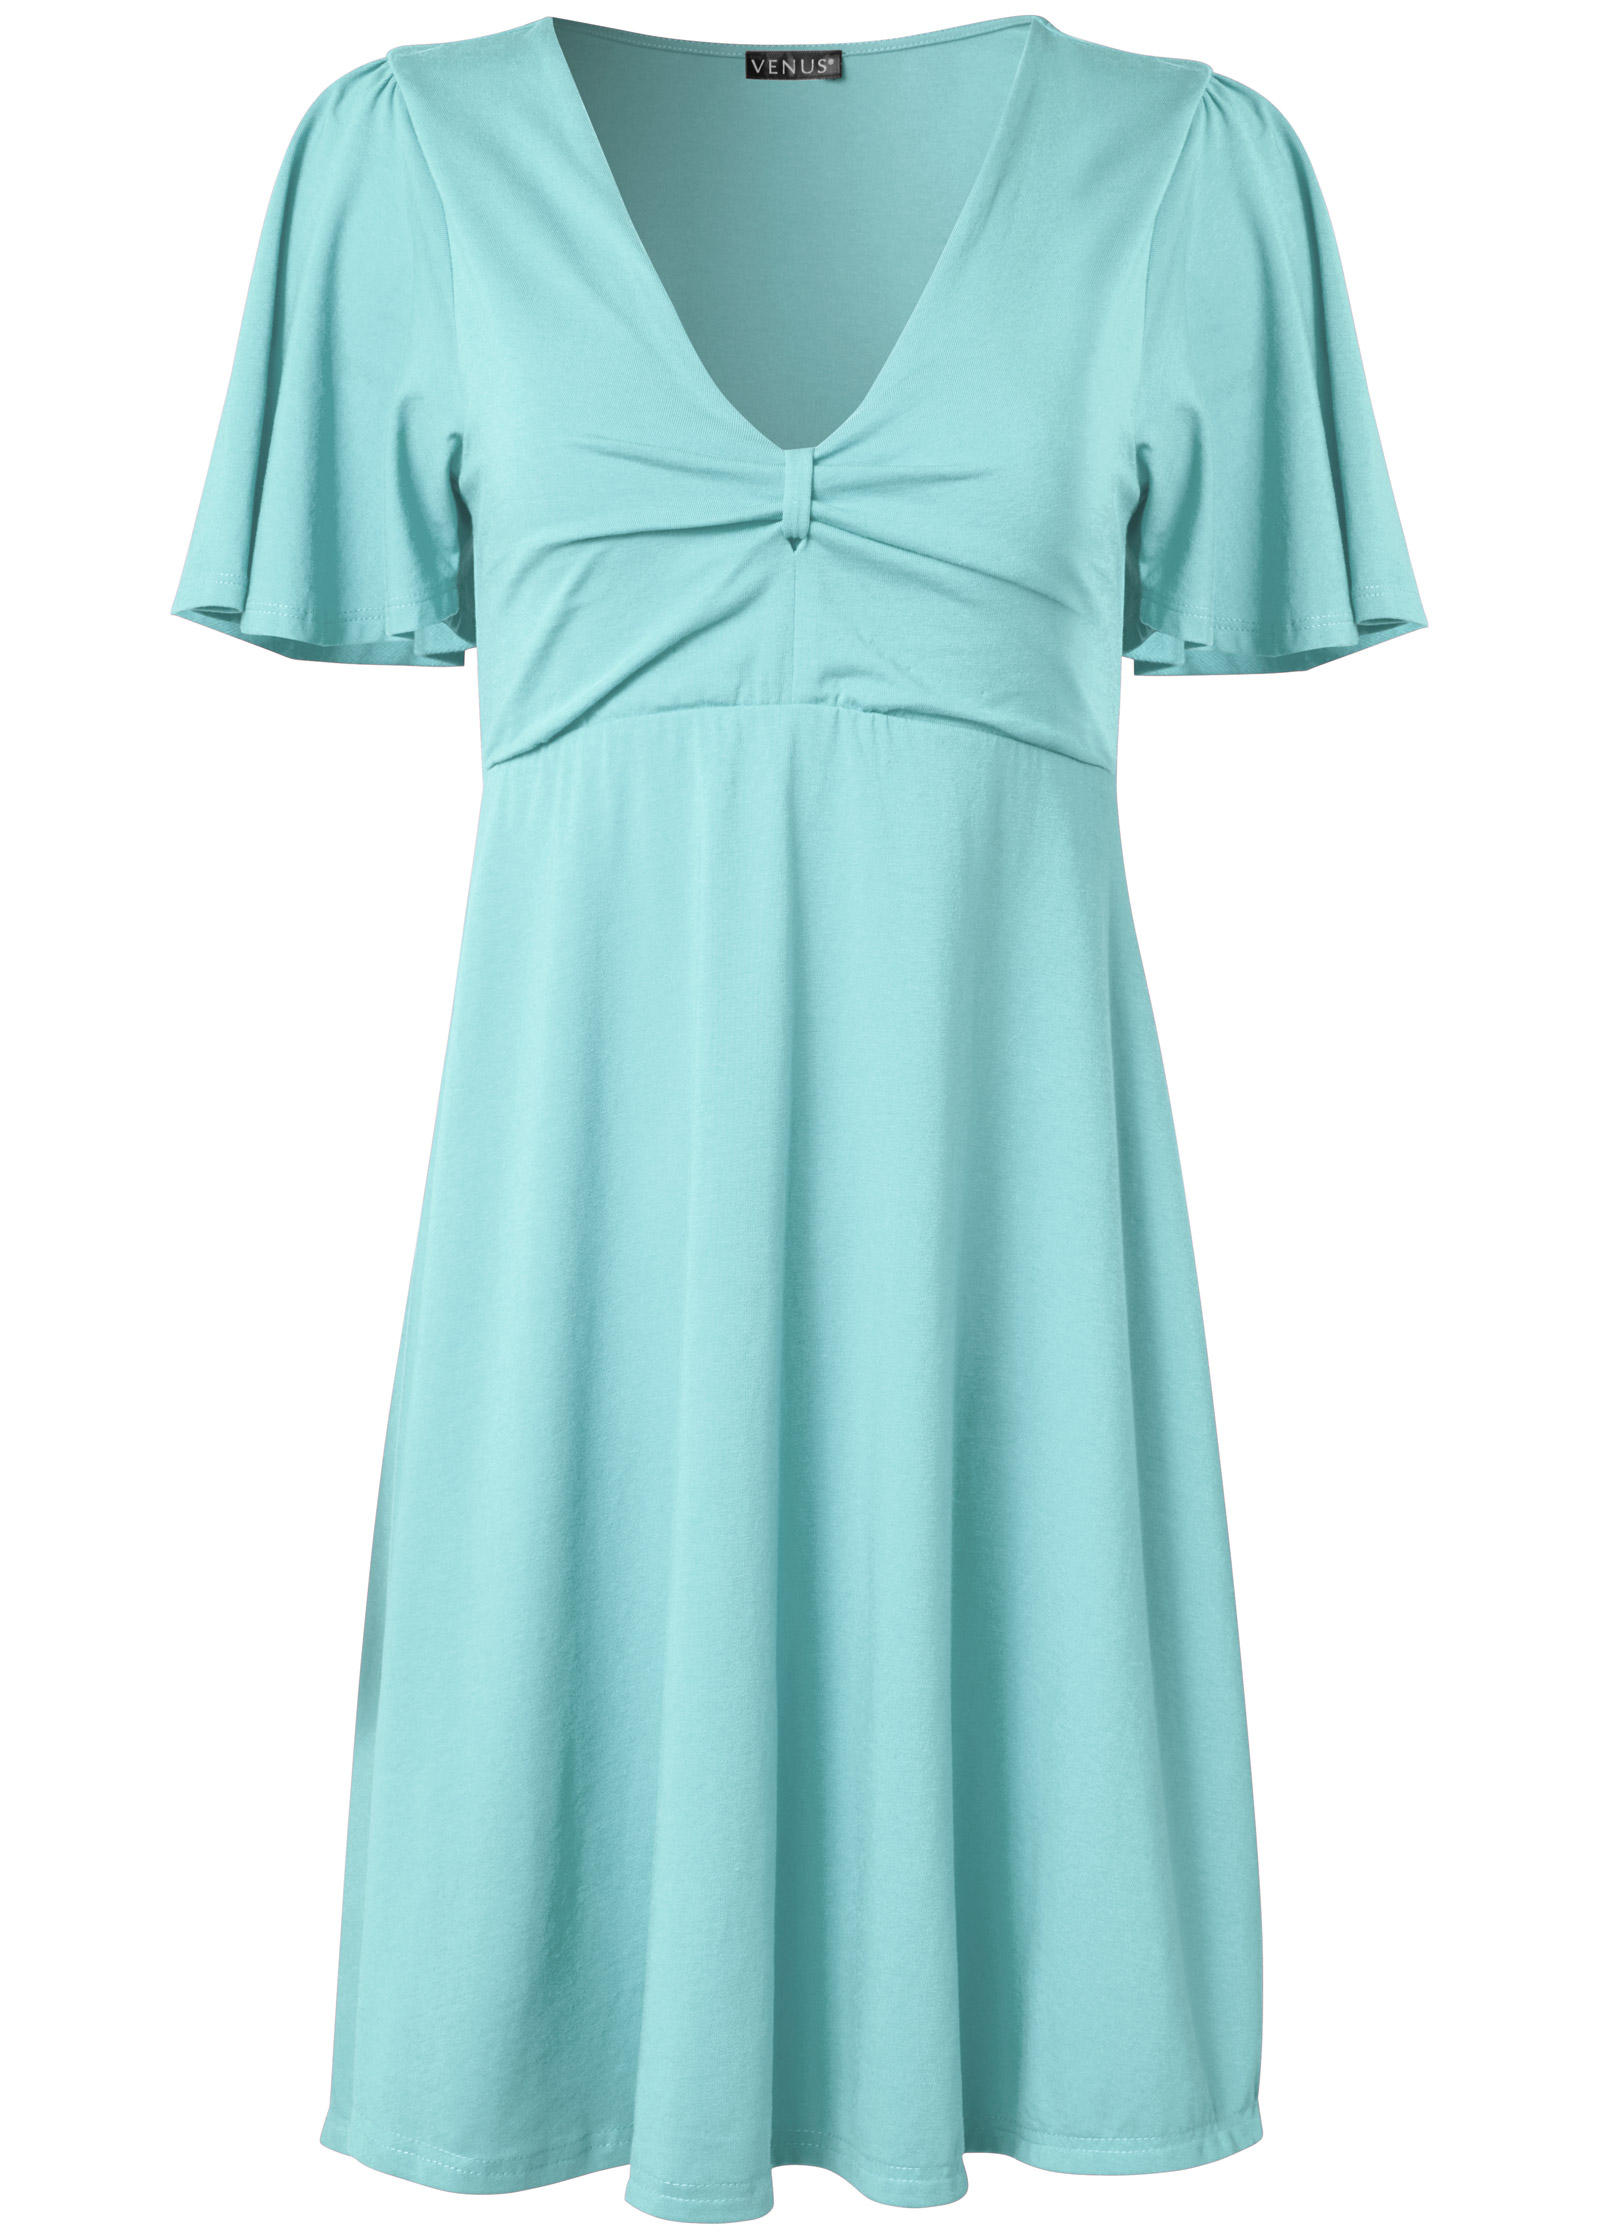 Flutter Sleeve V-Neck Dress in Mint | VENUS